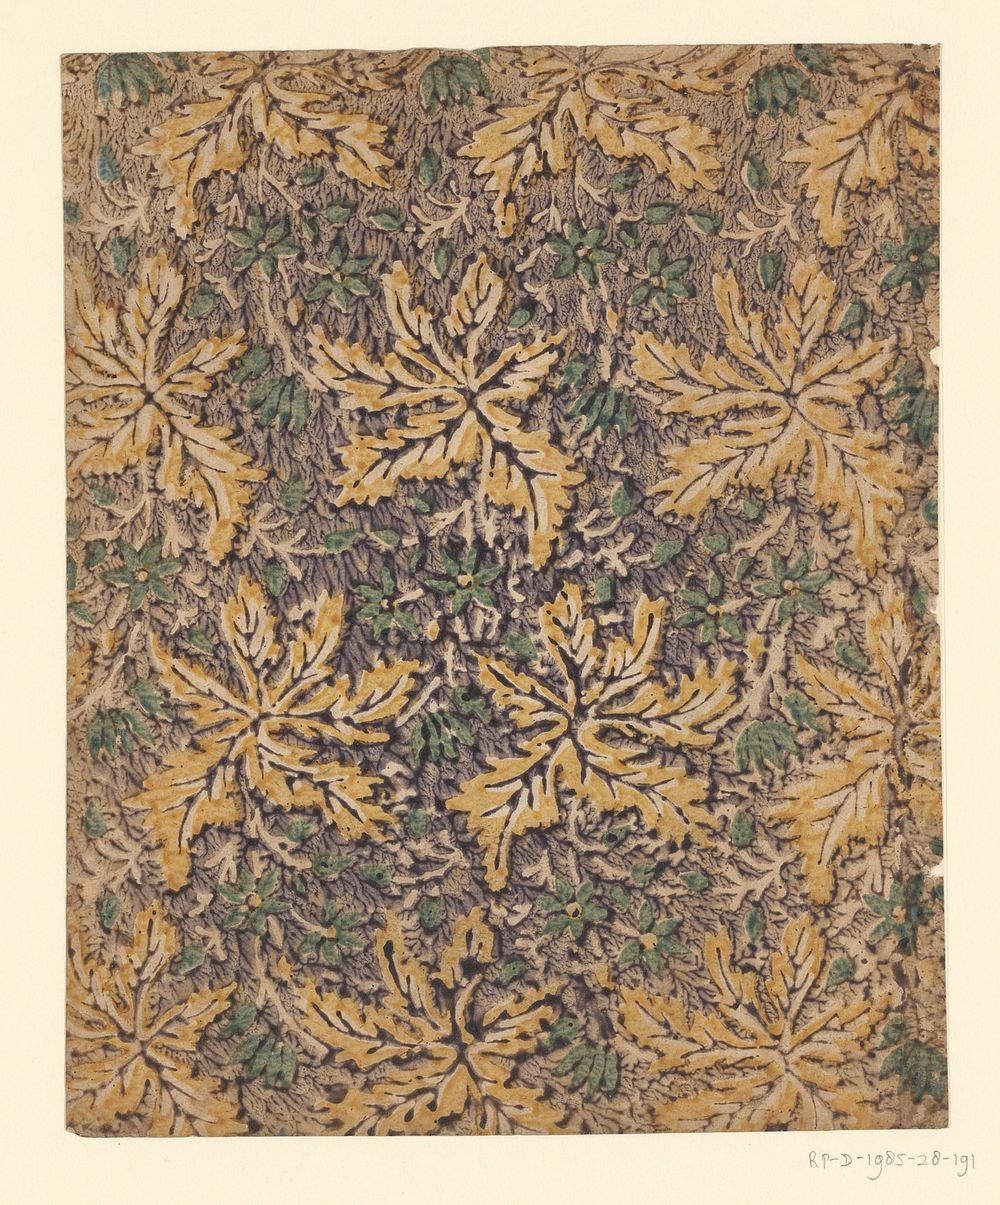 Blad met strooipatroon van uitgespaarde bladeren (1750 - 1900) by anonymous